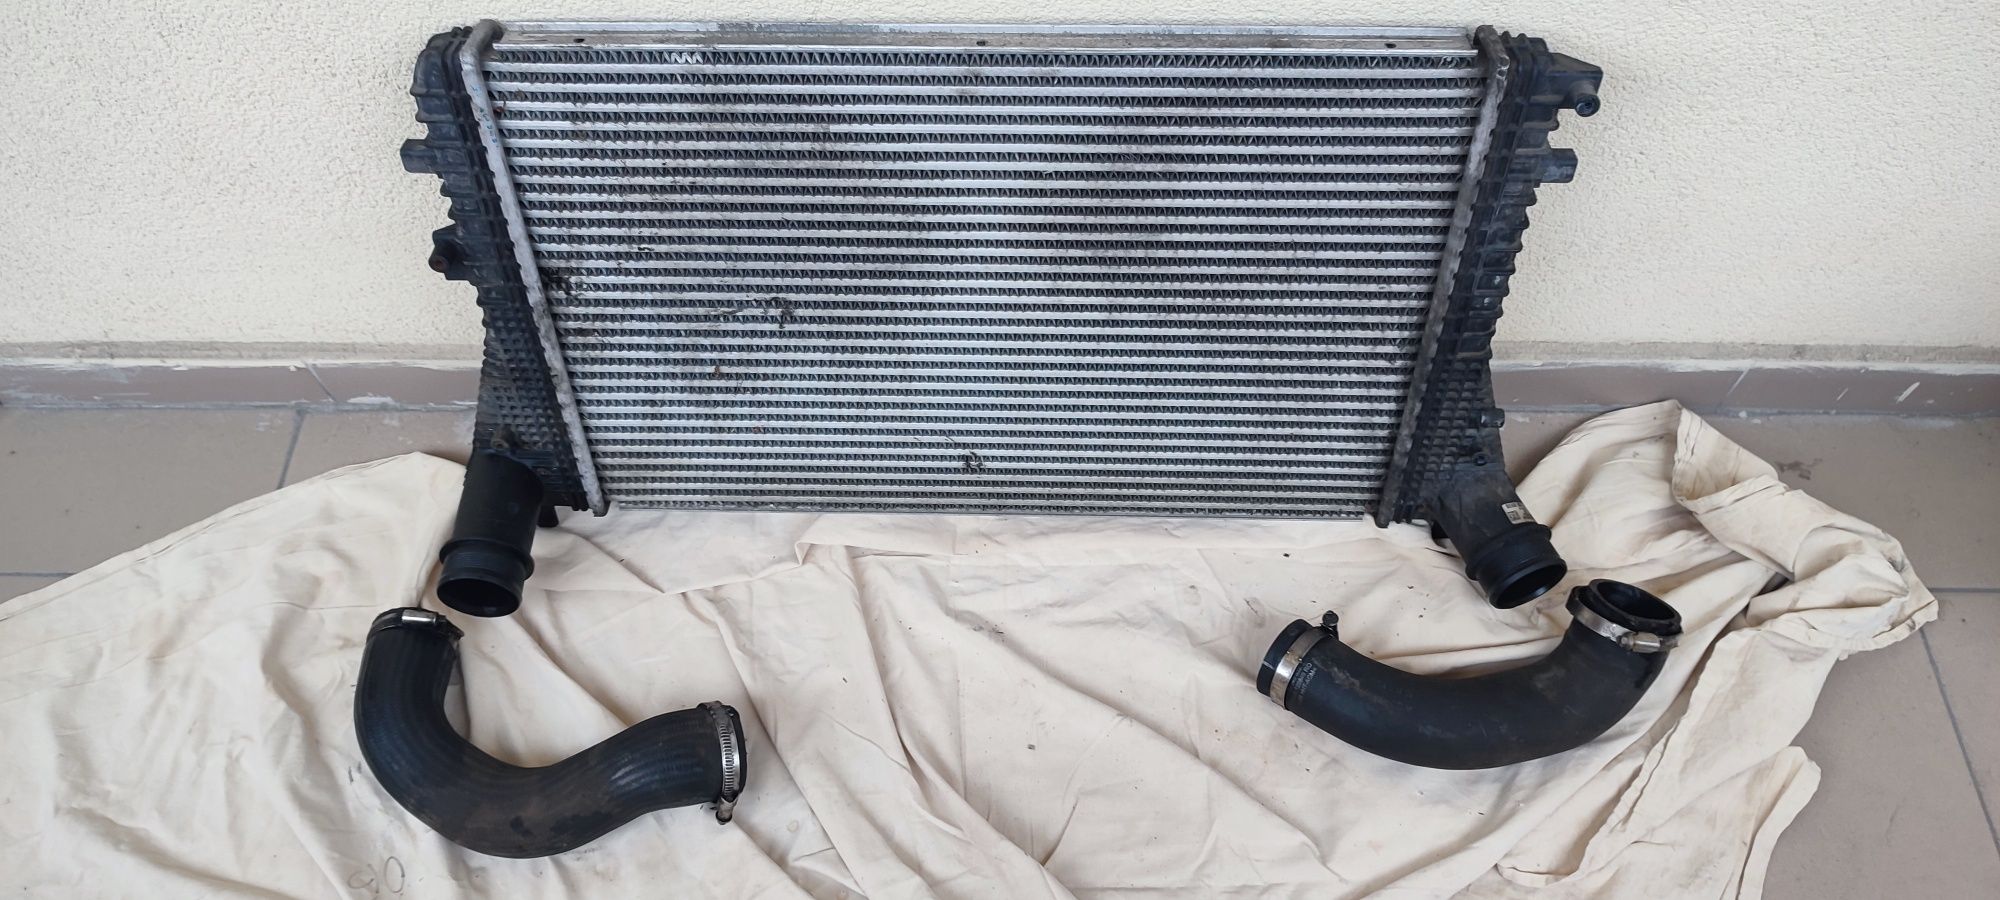 Интеркулер радиатор с патрубками в сборе Volkswagen Tiguan 11-16г.в.